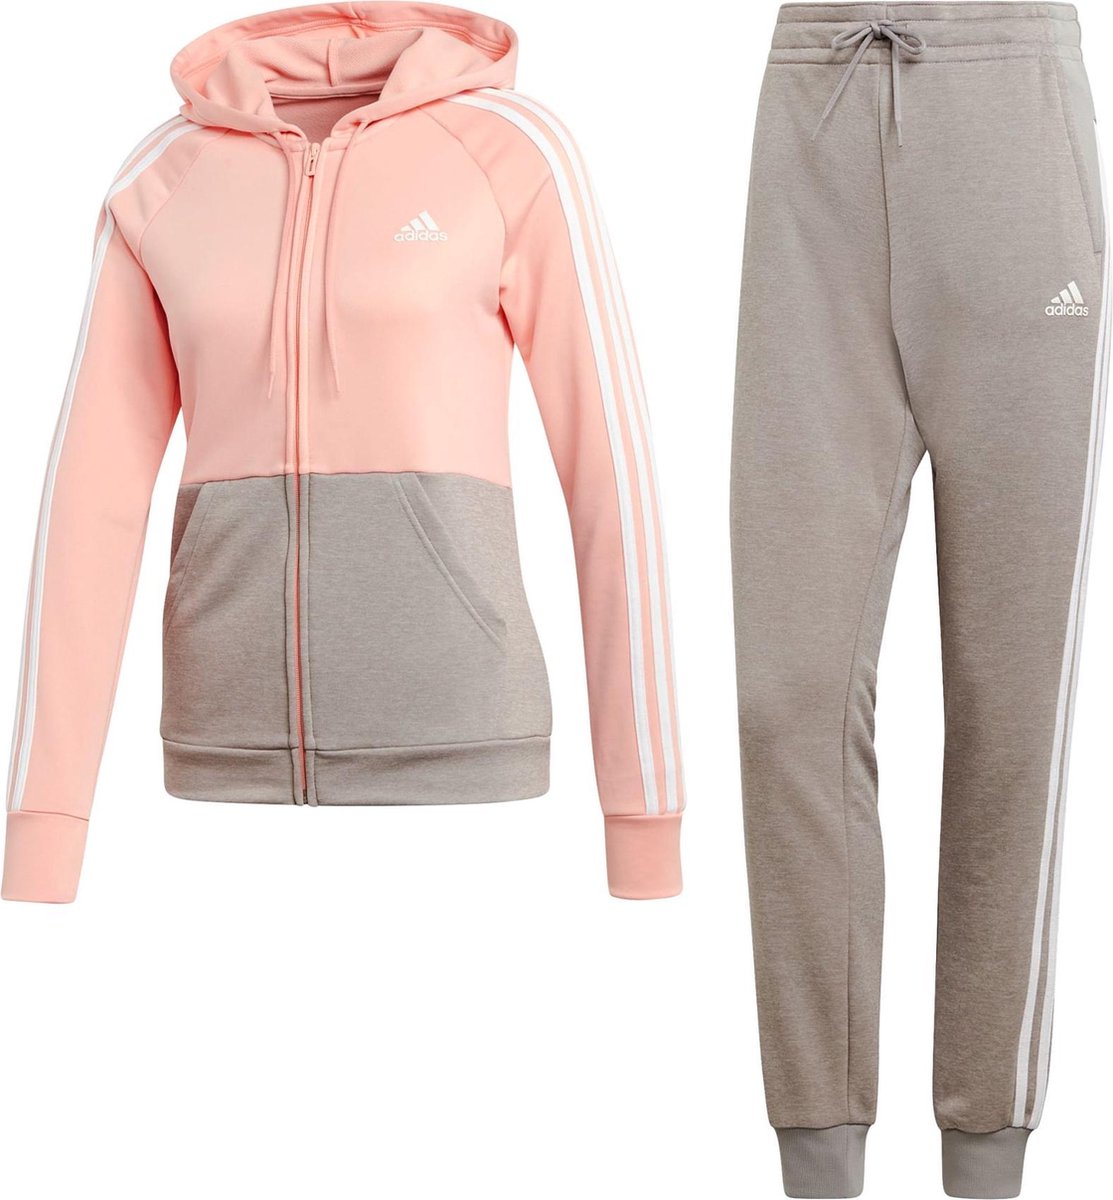 adidas Game Time Trainingspak - Maat M - Vrouwen - roze/grijs ...